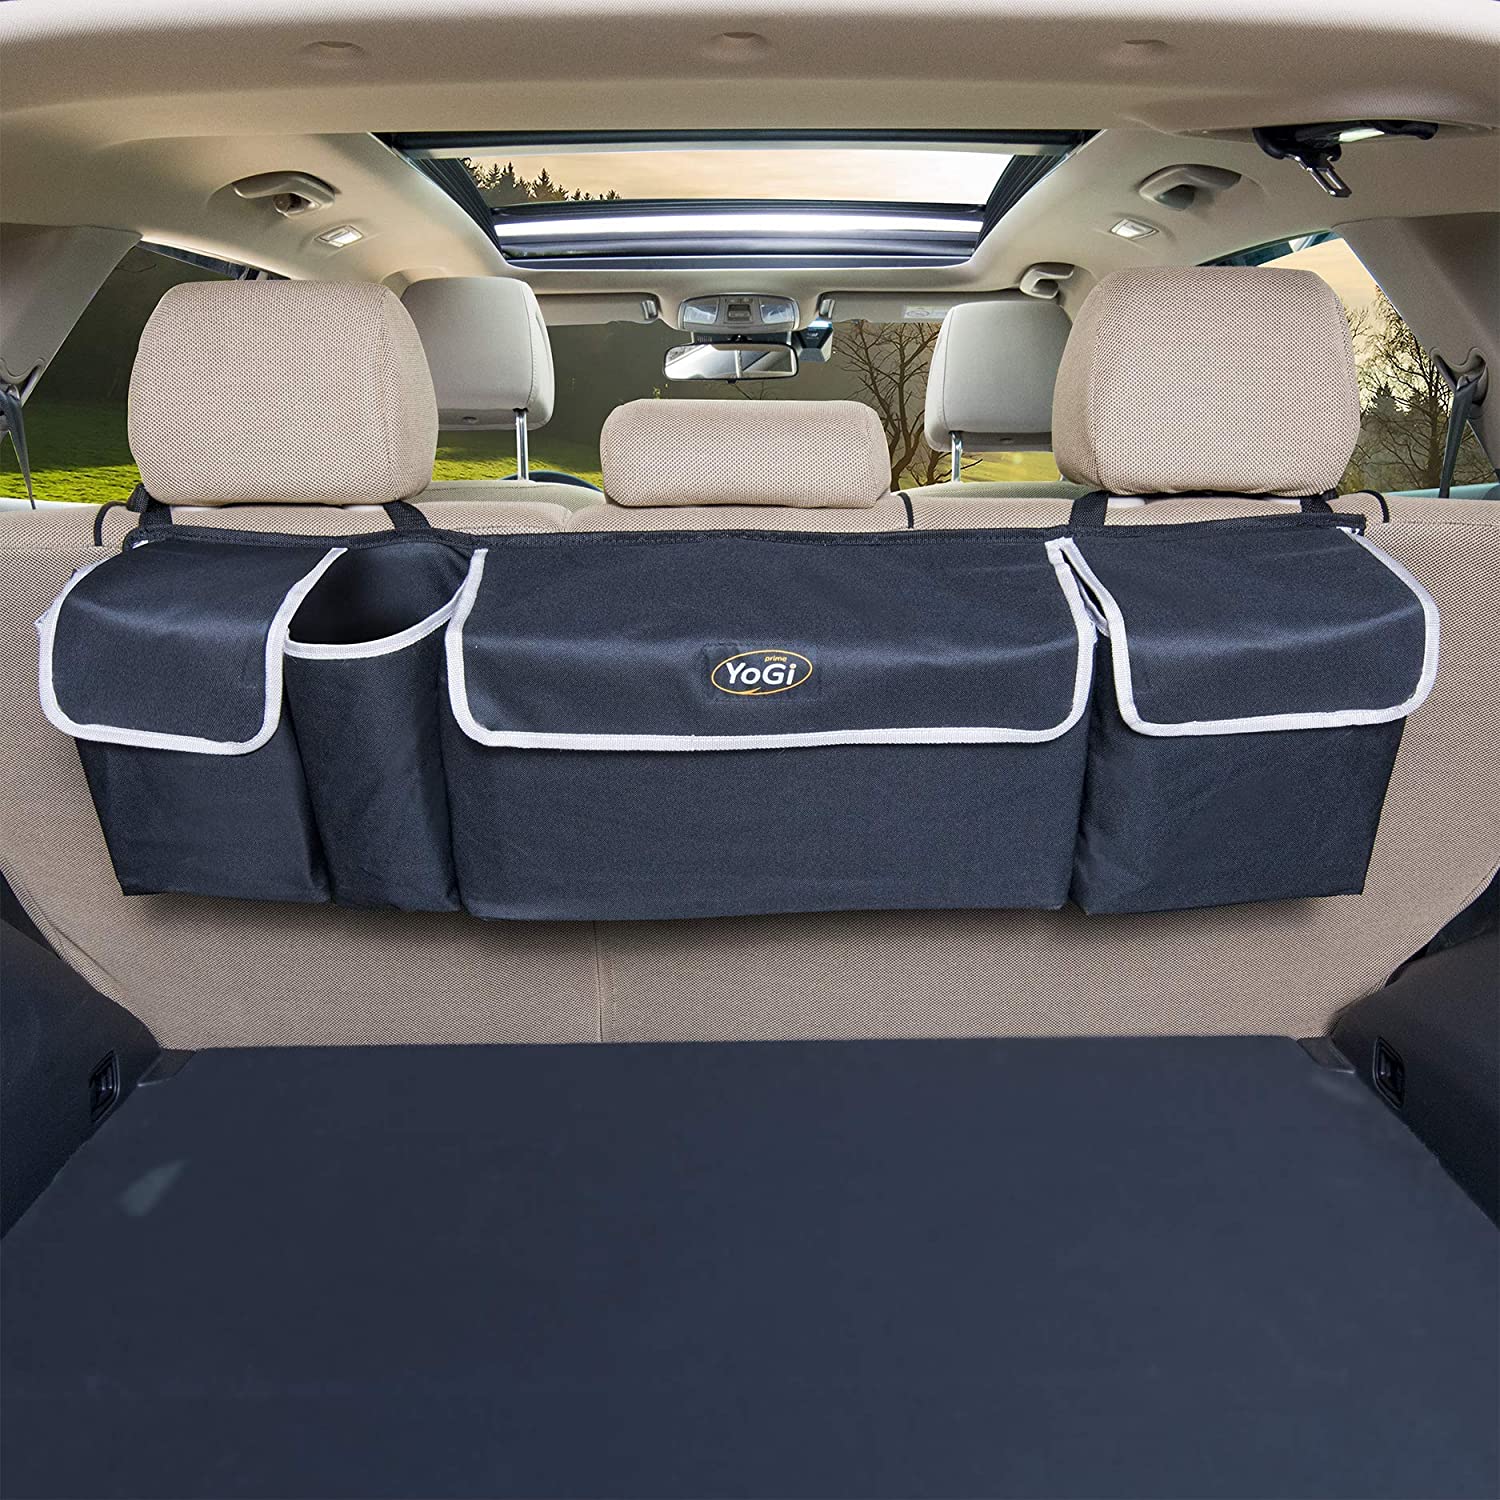 Car Storage Box Organizer Backseat Bins and Free Trunk Floors Black Hanging